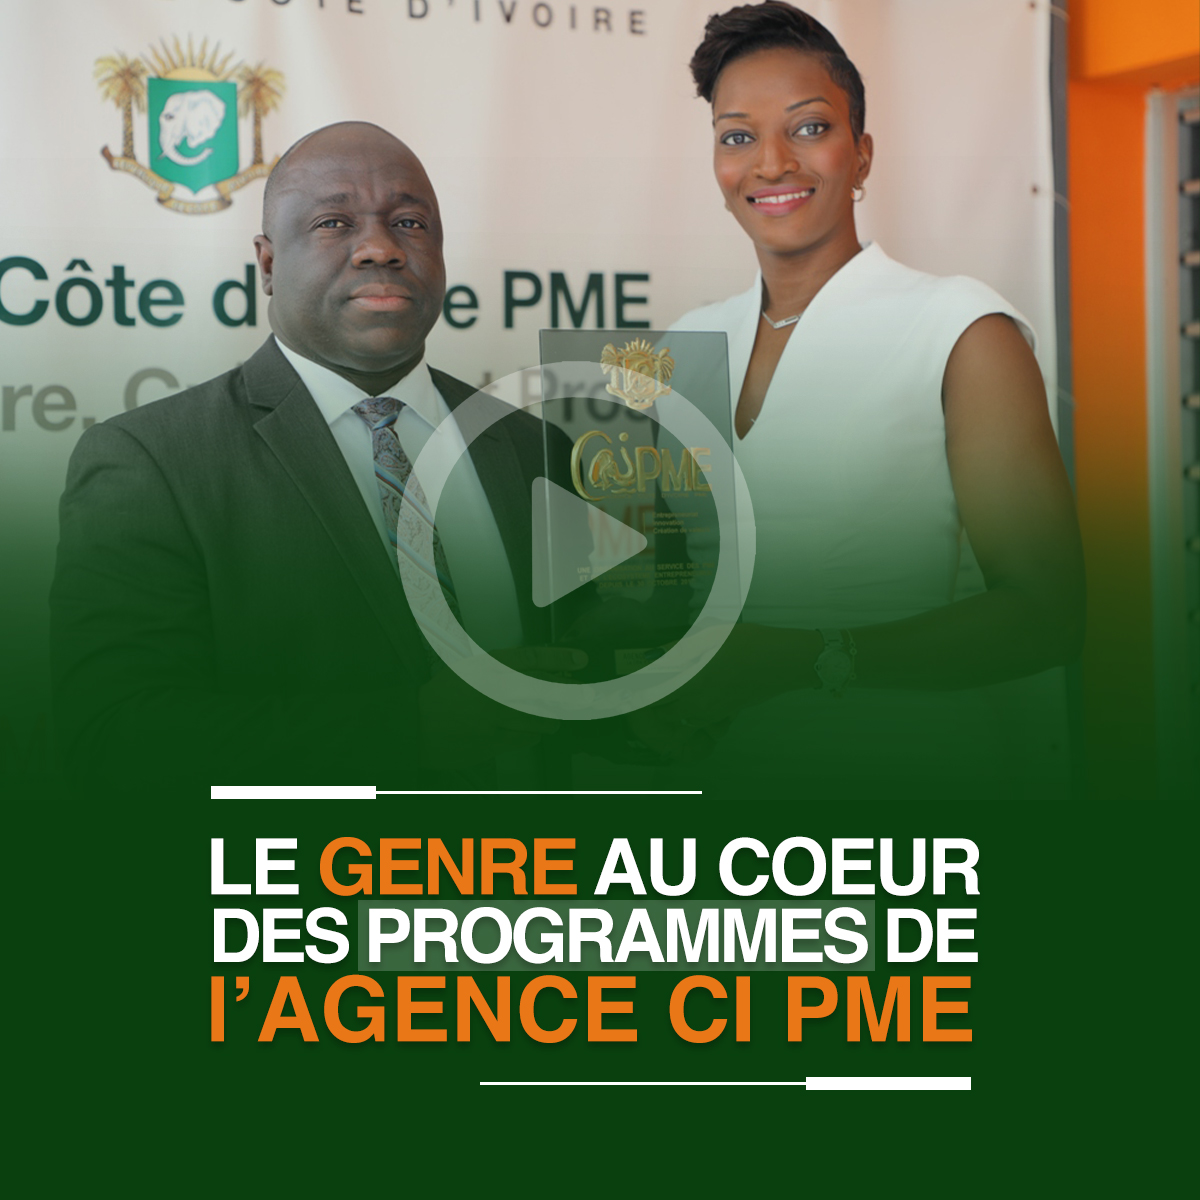 Agence CI PME